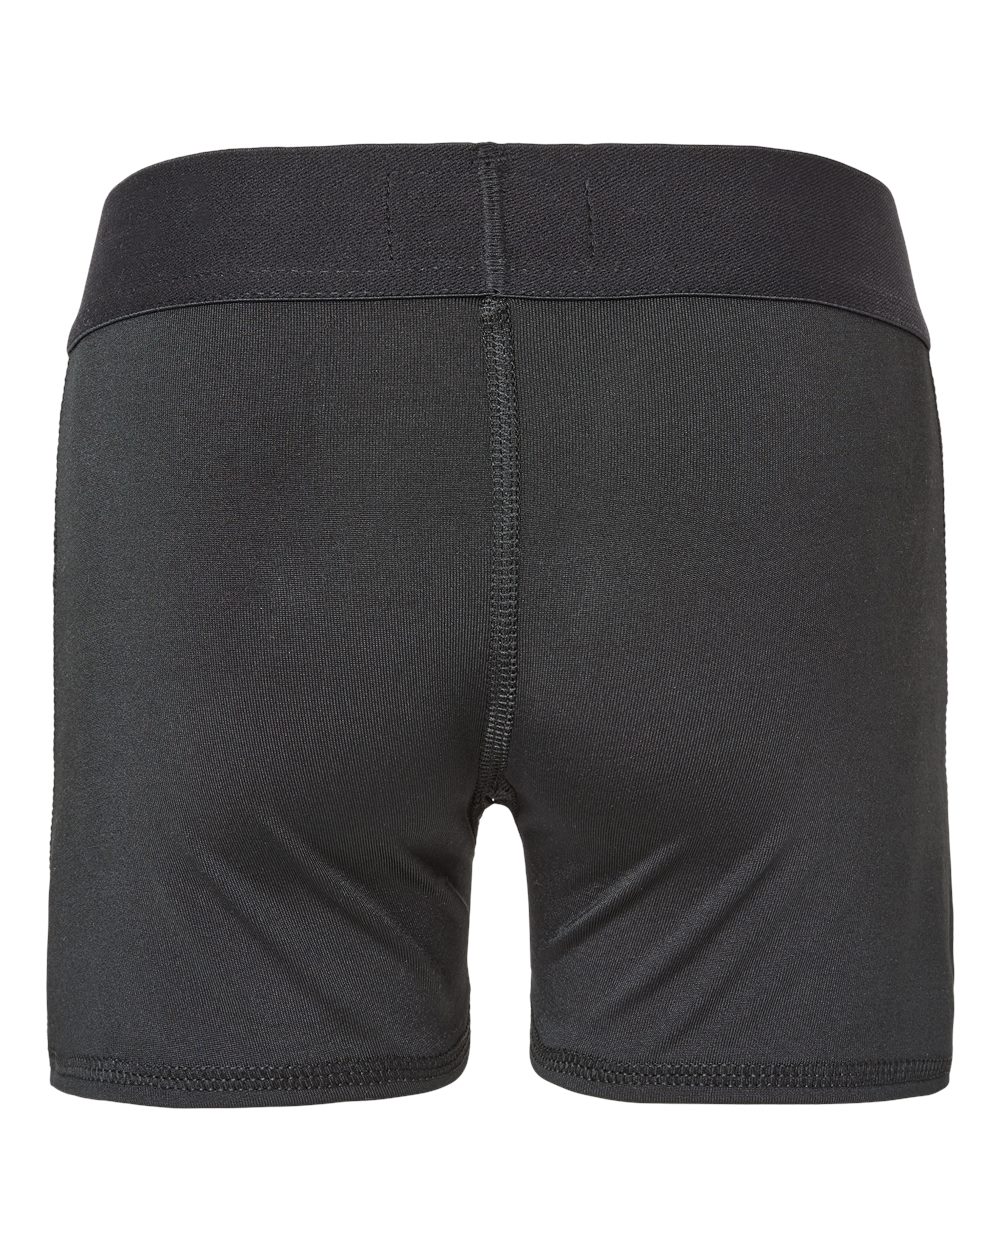 Badger 2629 - Girls' Pro-Compression Shorts